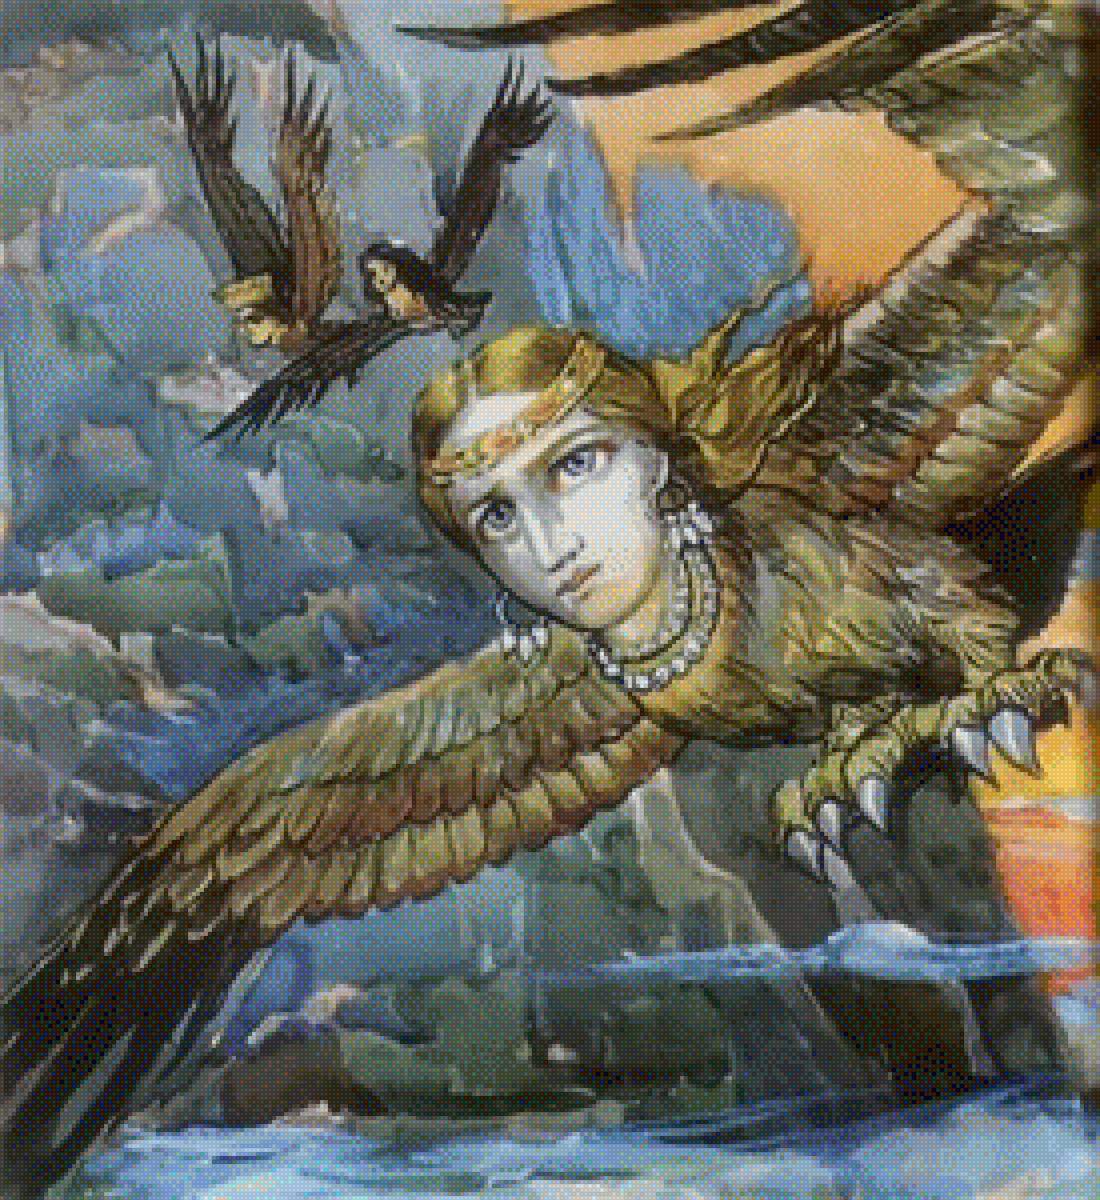 Див - дух-прорицатель в образе птицы. - славянский бестиарий, мифы, легенды, боги, мифические существа - предпросмотр